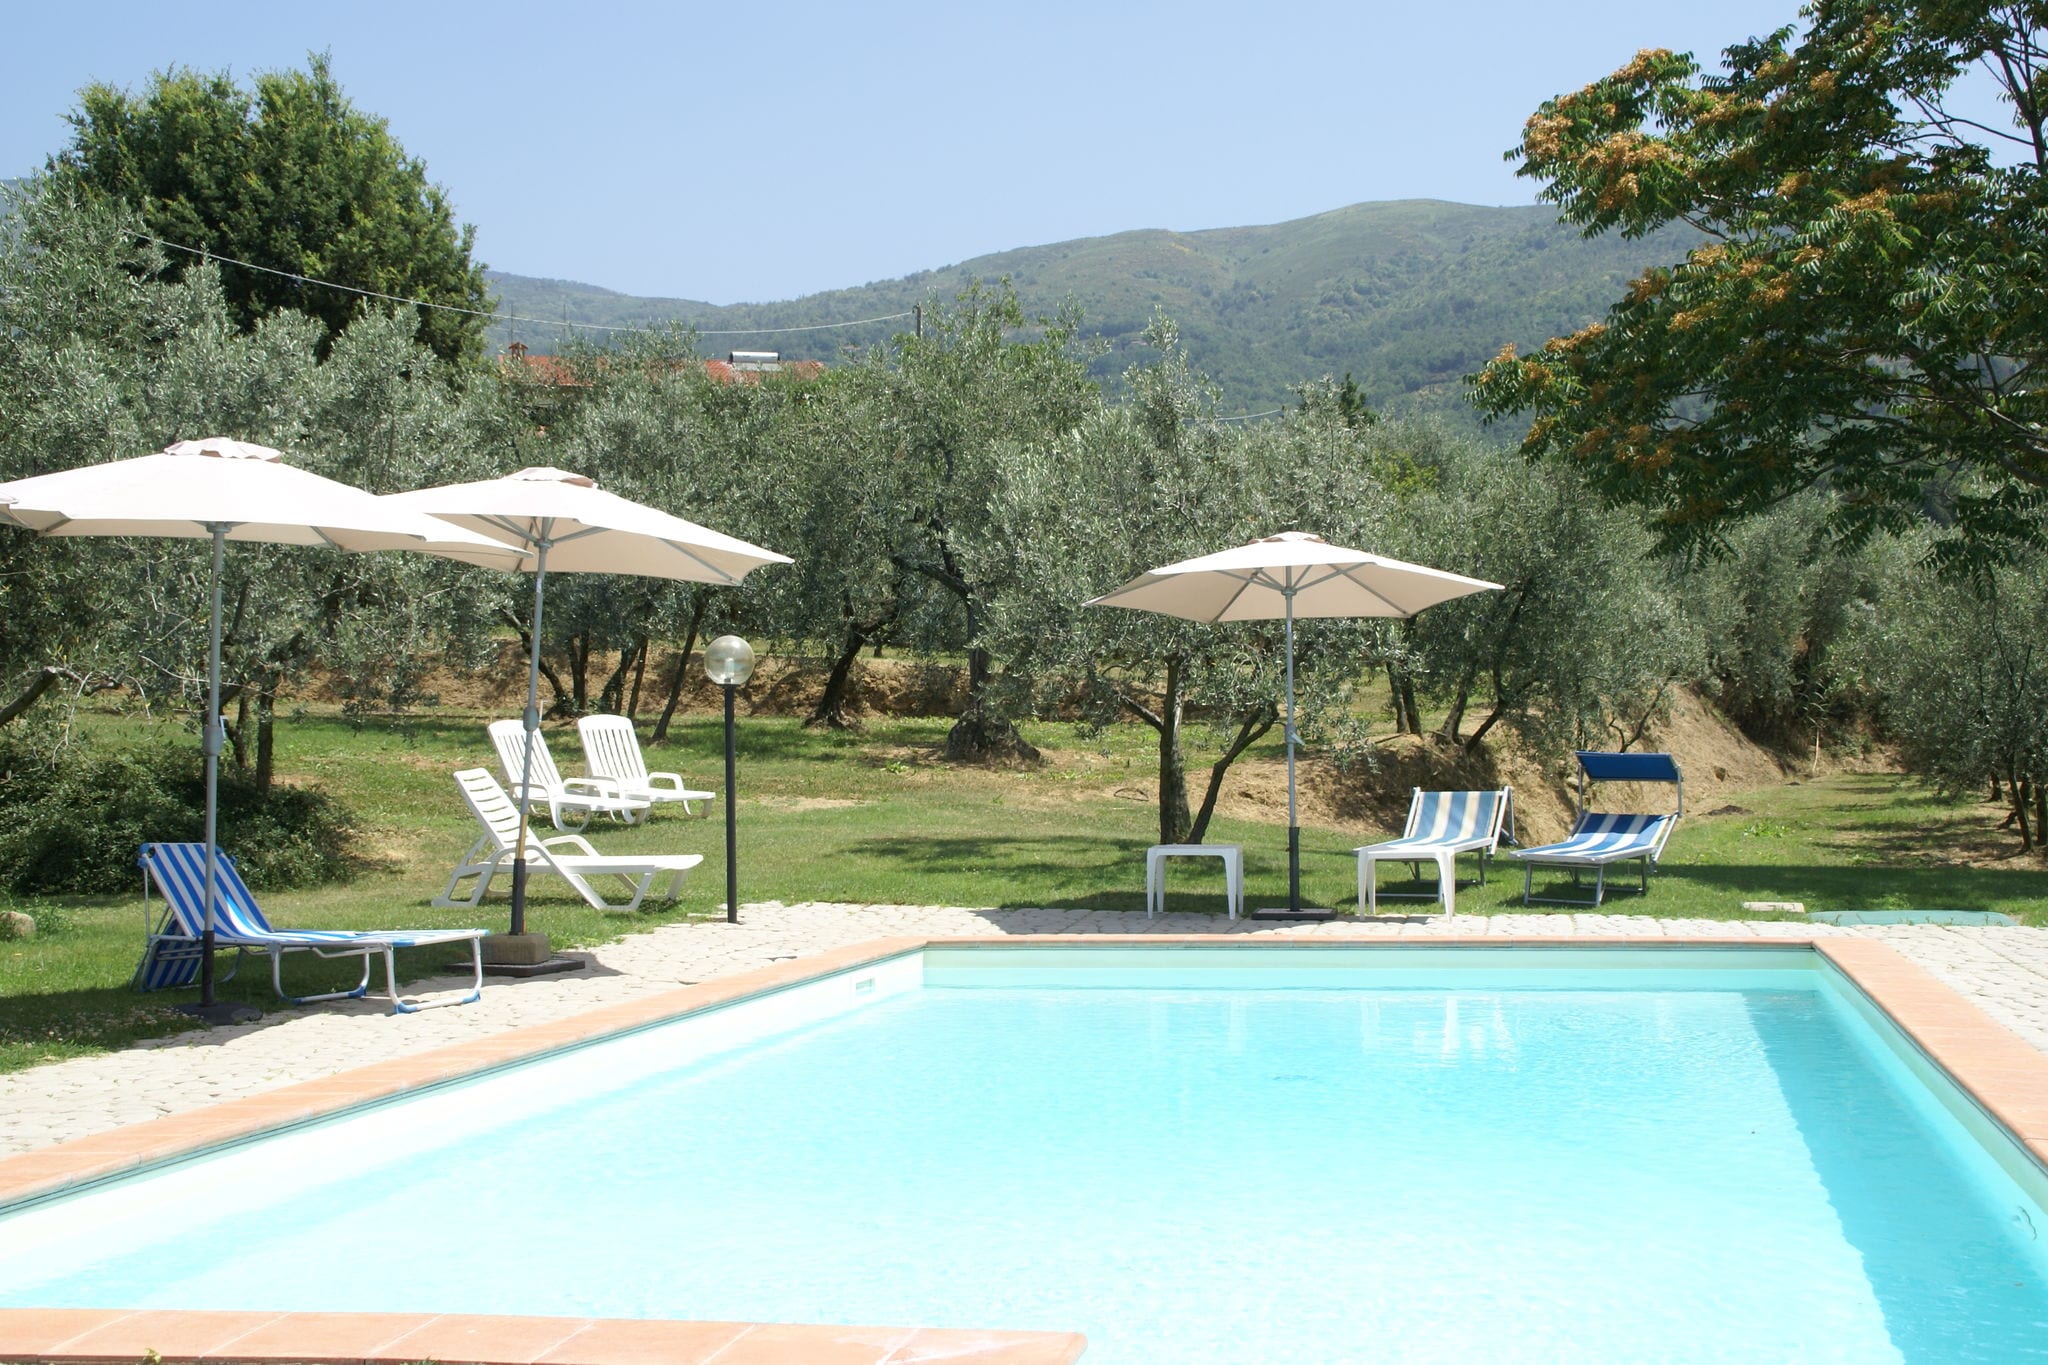 Schitterende villa met zwembad in Toscane